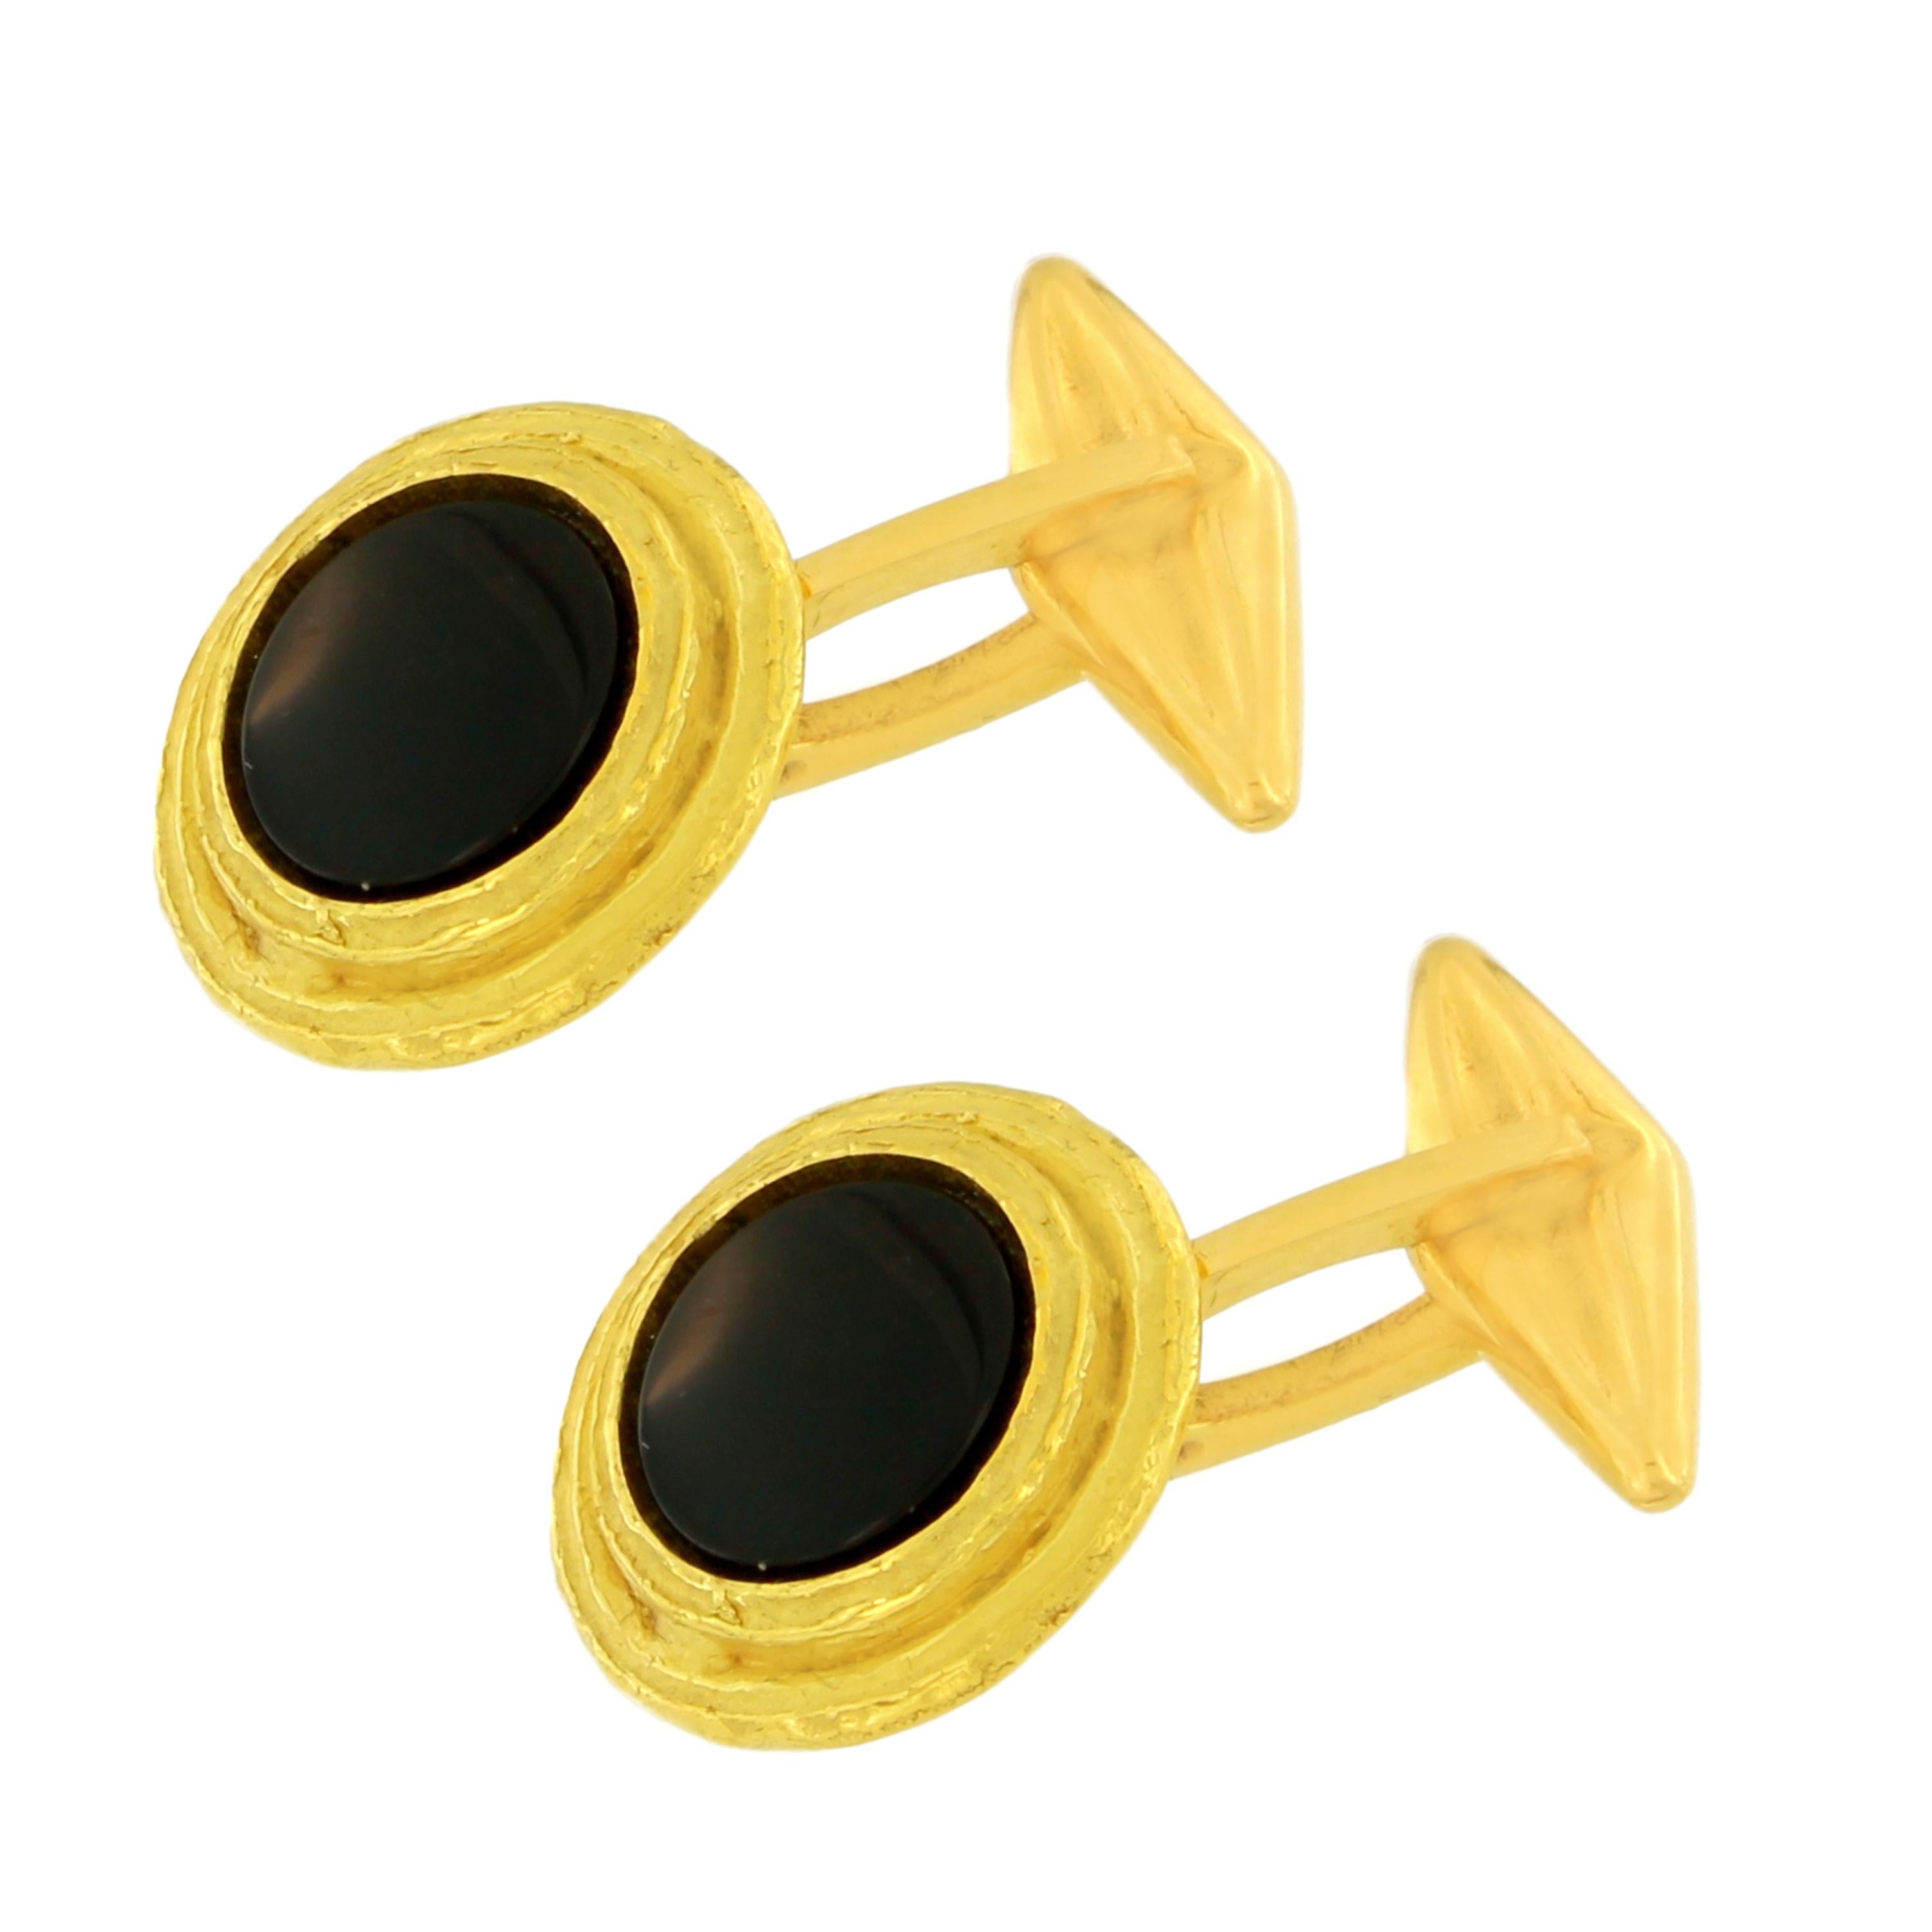 Boutons de manchette ronds en or jaune satiné et pierre d'onyx noir, fabriqués à la main selon la technique du moulage à la cire perdue.

Le moulage à la cire perdue, l'une des plus anciennes techniques de création de bijoux, constitue la base de la